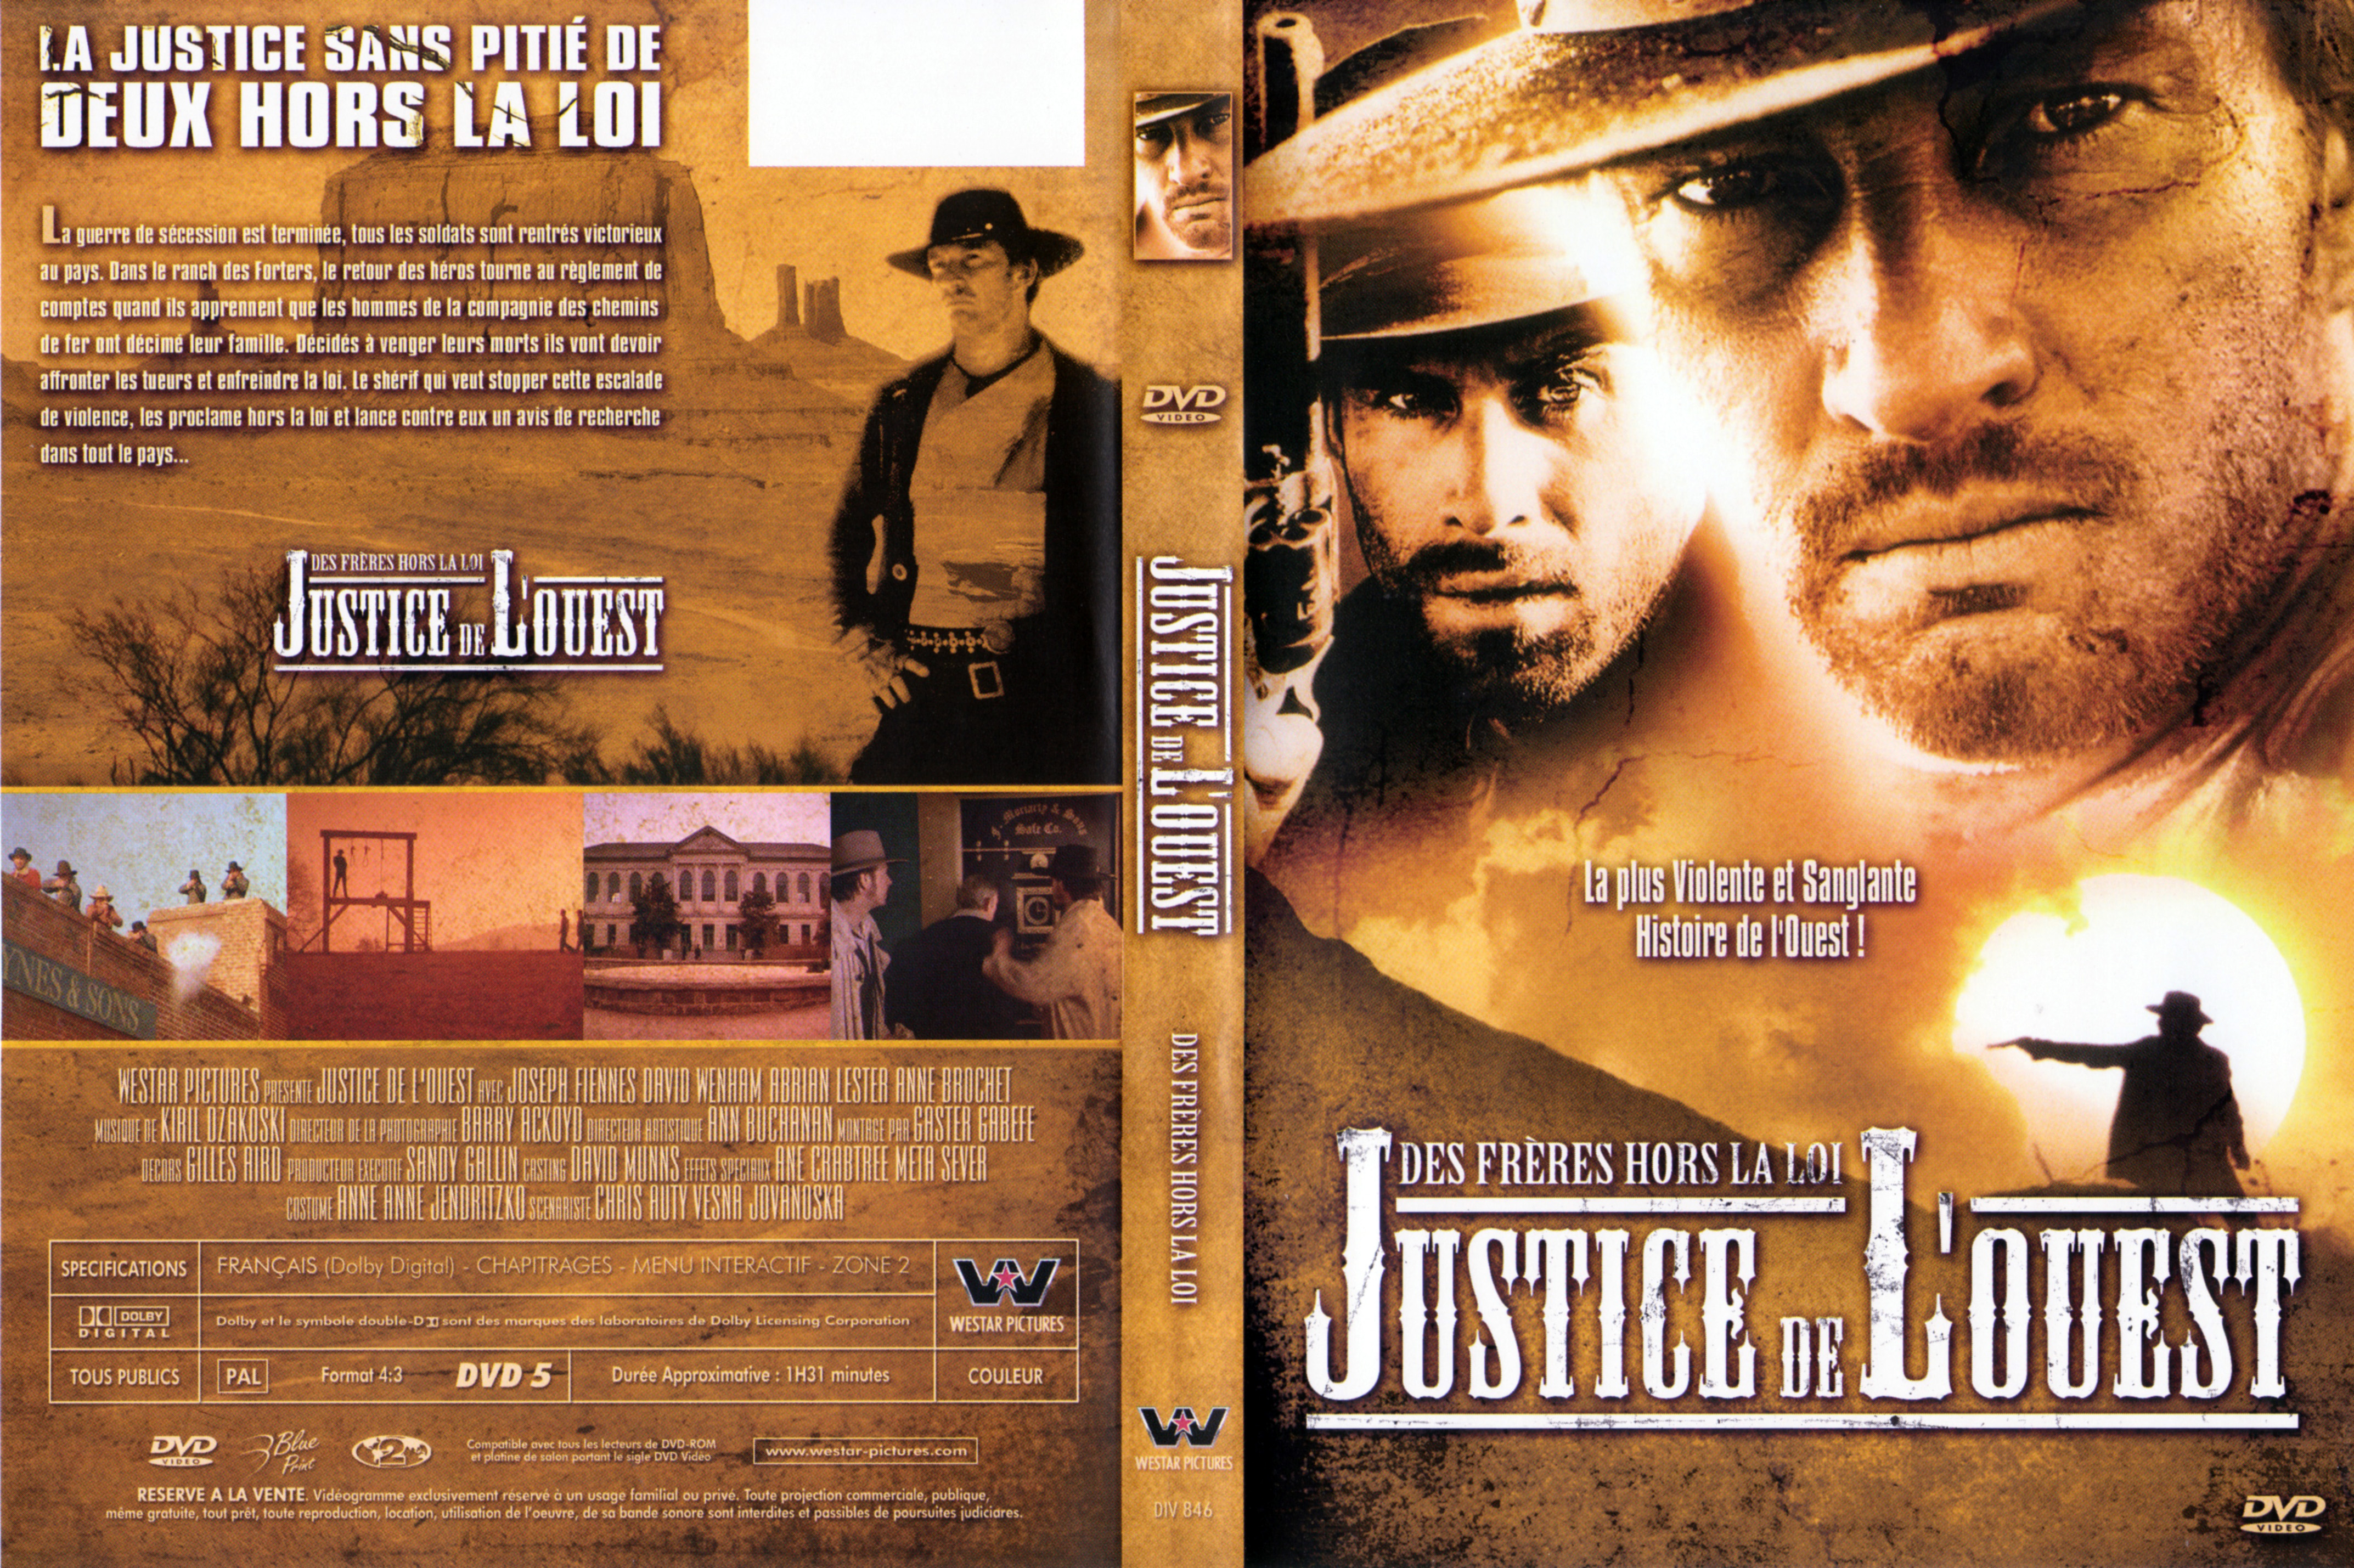 Jaquette DVD Justice de l